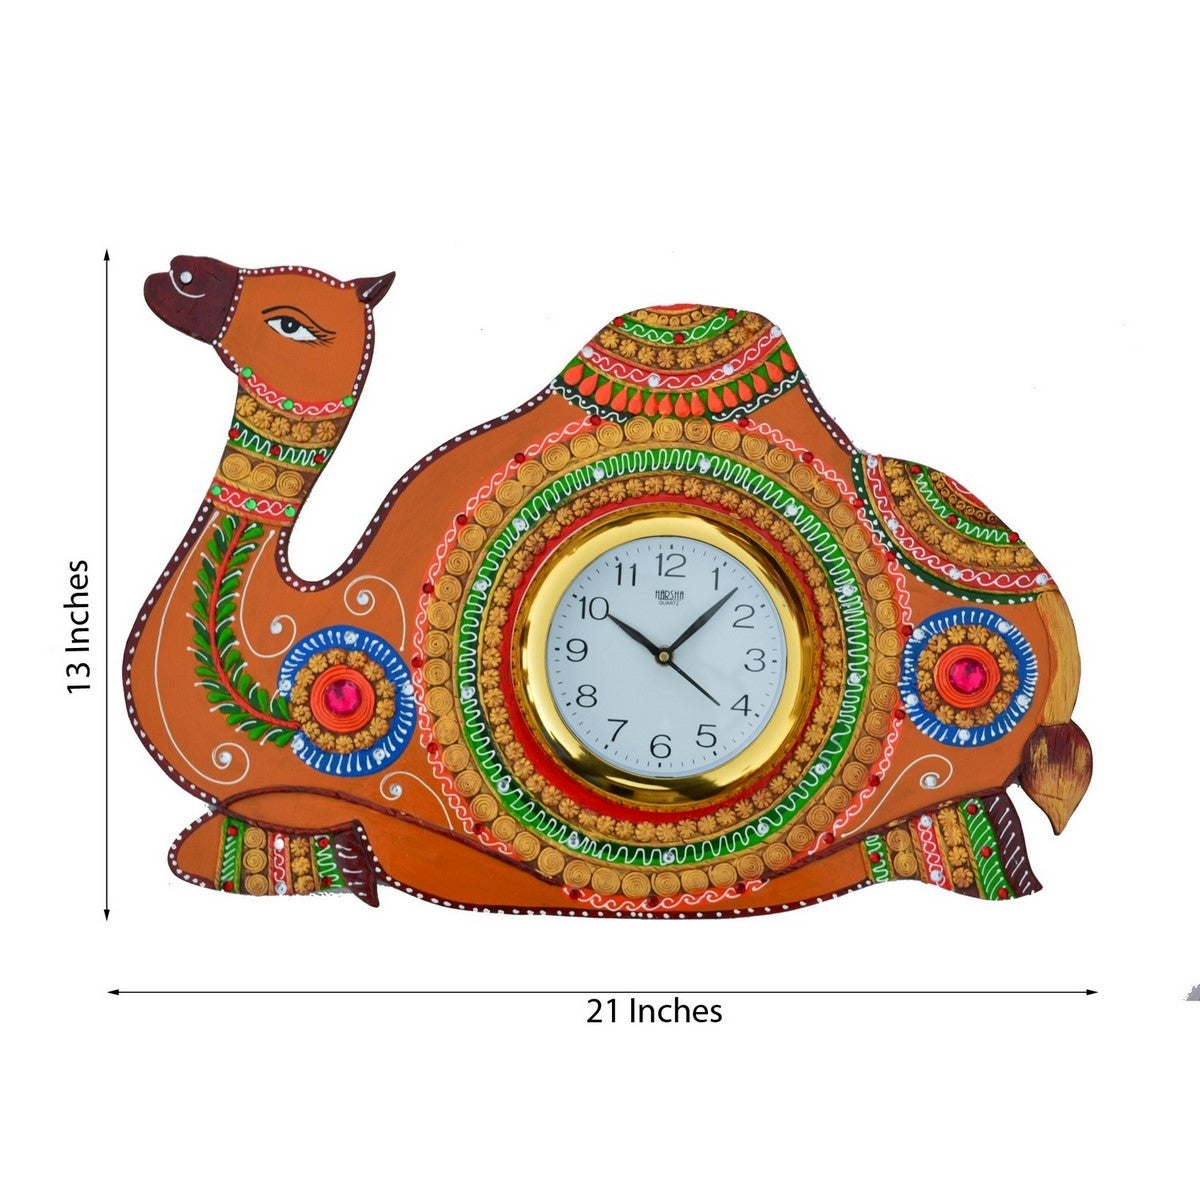 Papier-Mache Camel Handcrafted Wall Clock 1